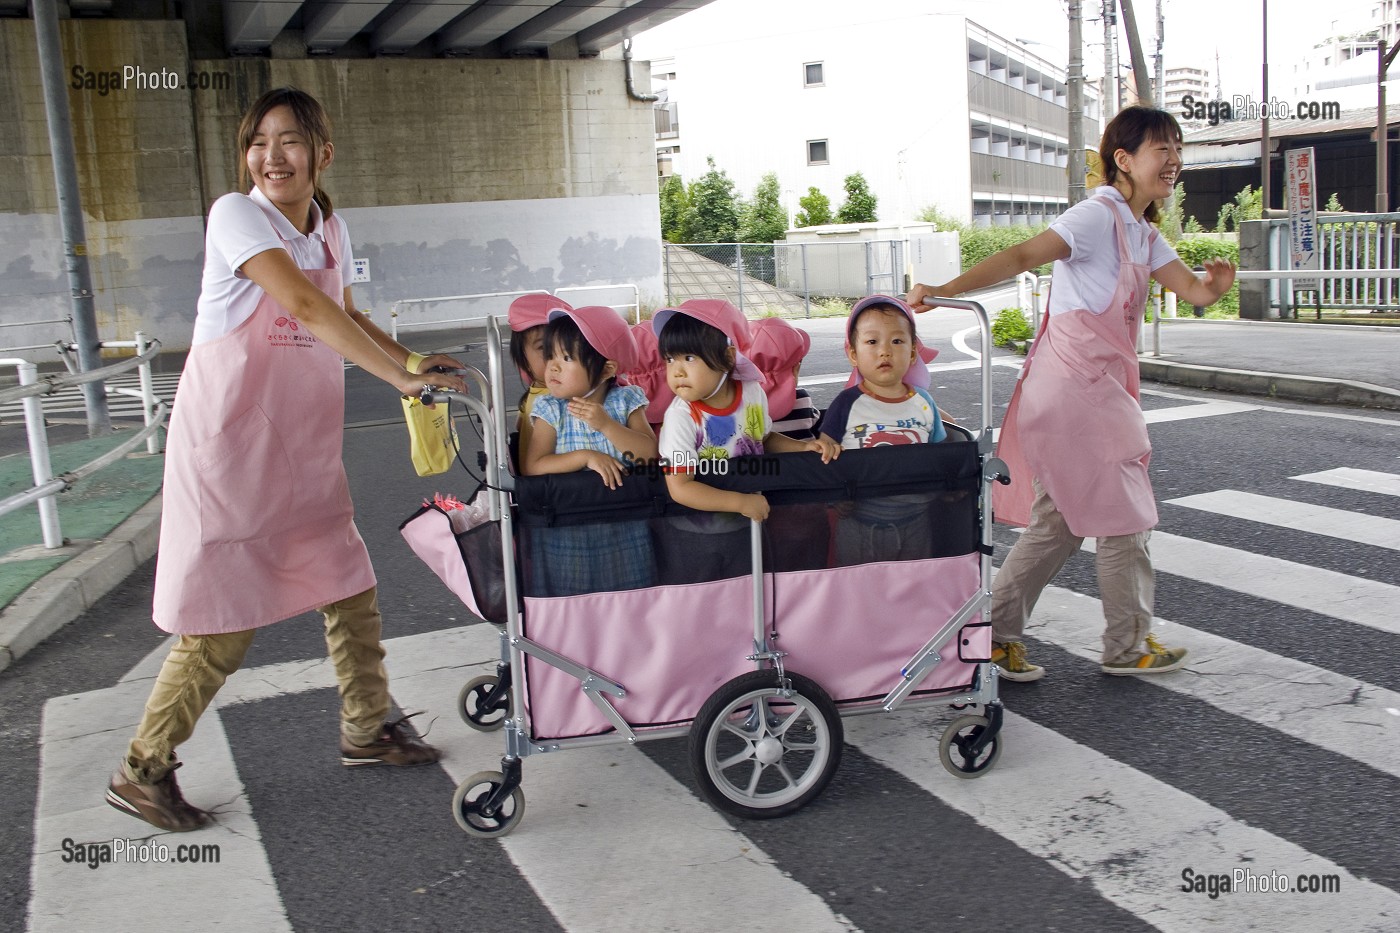 ENFANTS DANS UNE POUSSETTE COLLECTIVE TIREE PAR DES PUERICULTRICES JAPONAISES SUR UN PASSAGE PIETON, TOKYO, JAPON 